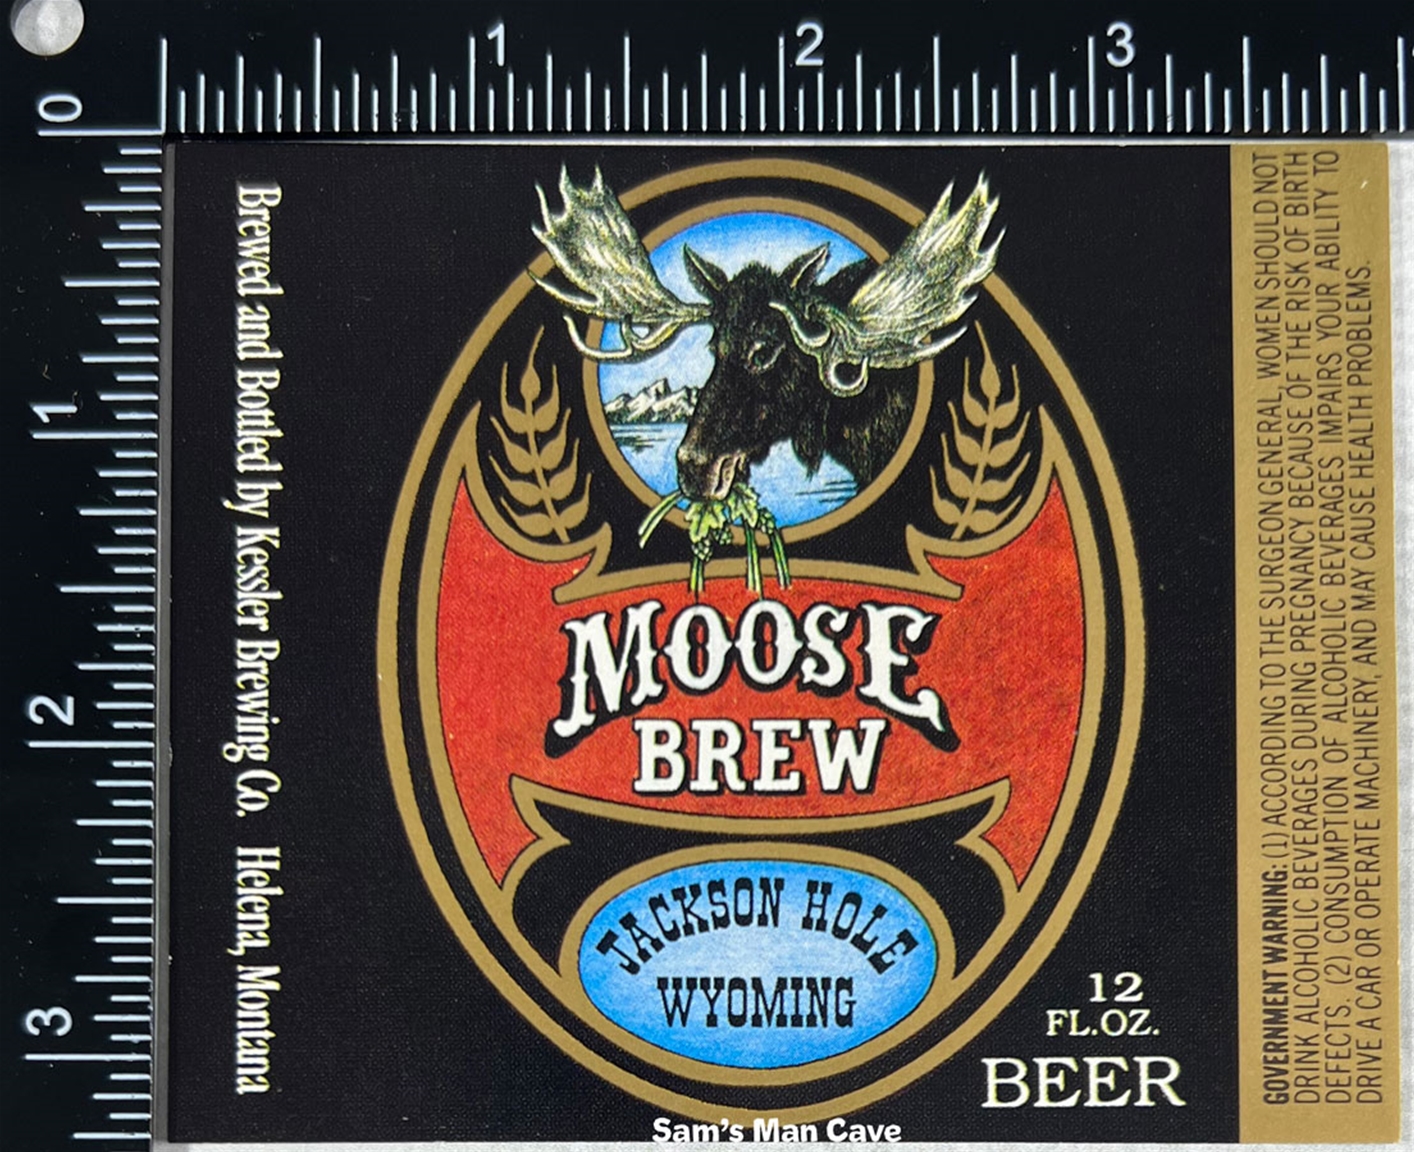 Kessler Moose Brew Beer Label